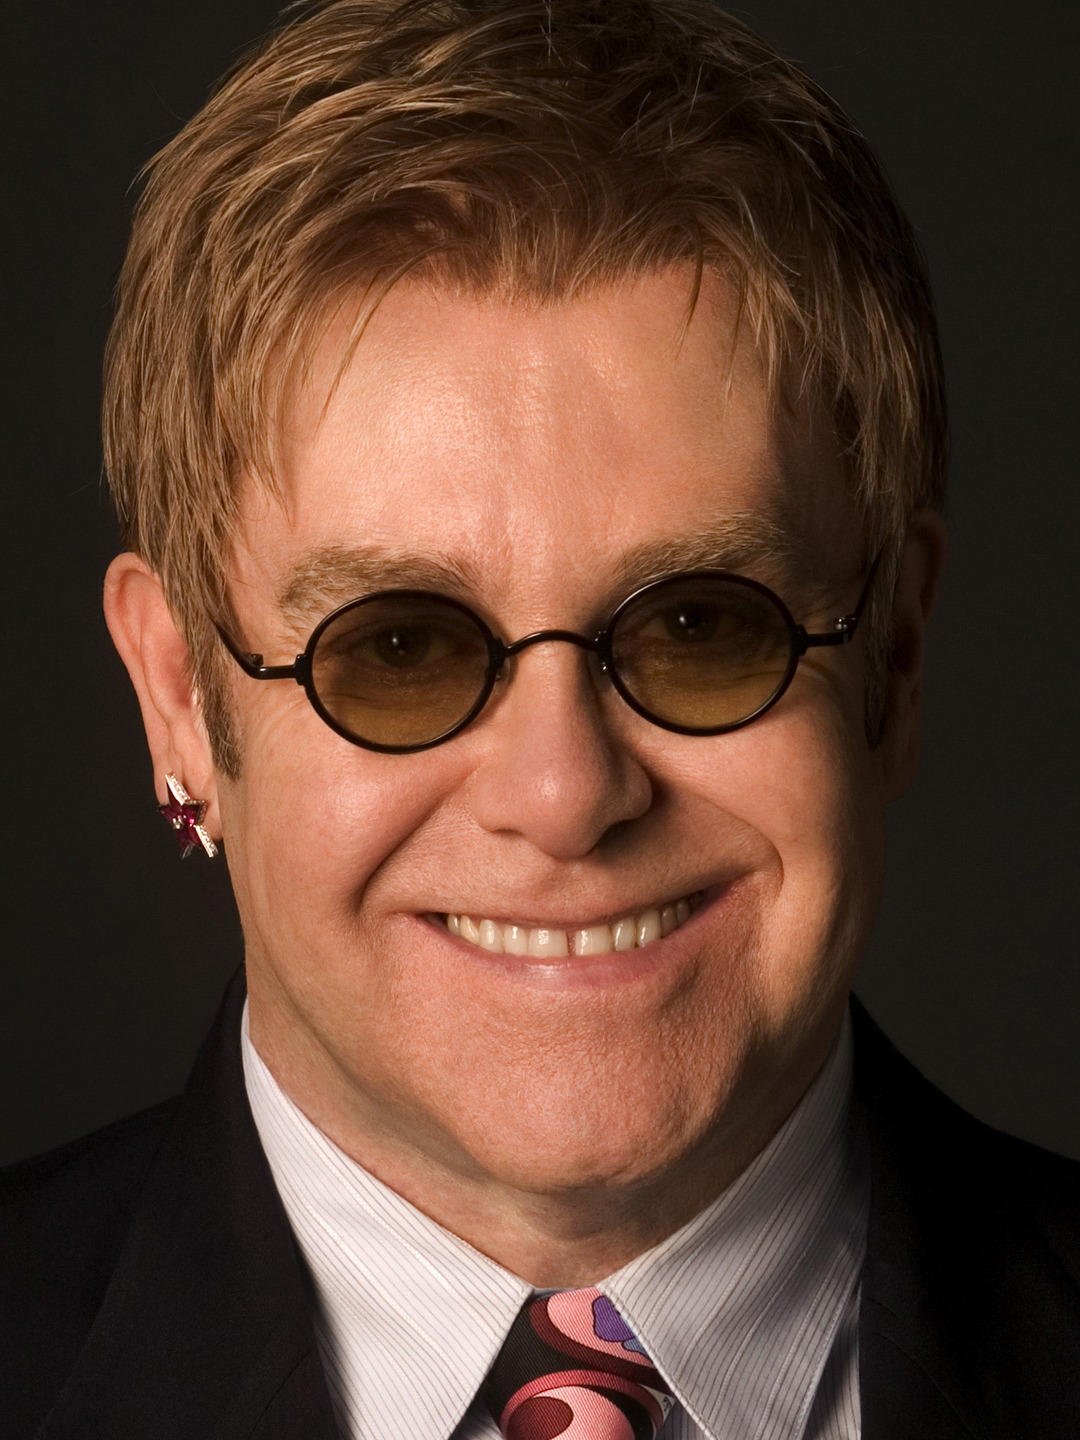 Elton John in real life